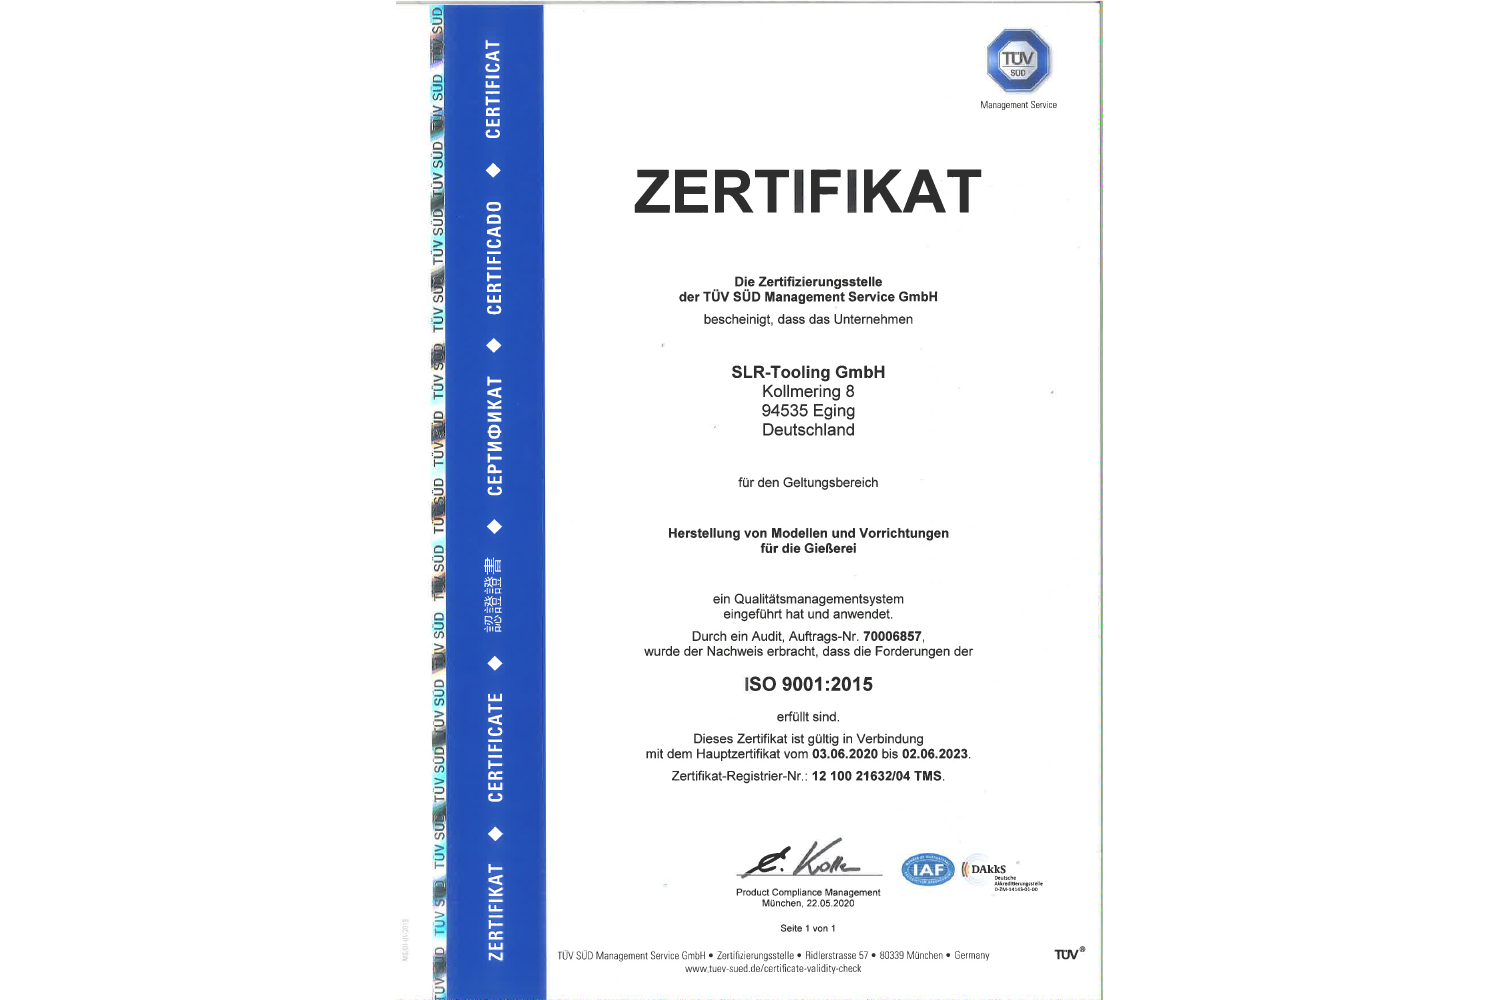 ISO 9001:2015 Zertifikat der SLR-Tooling GmbH